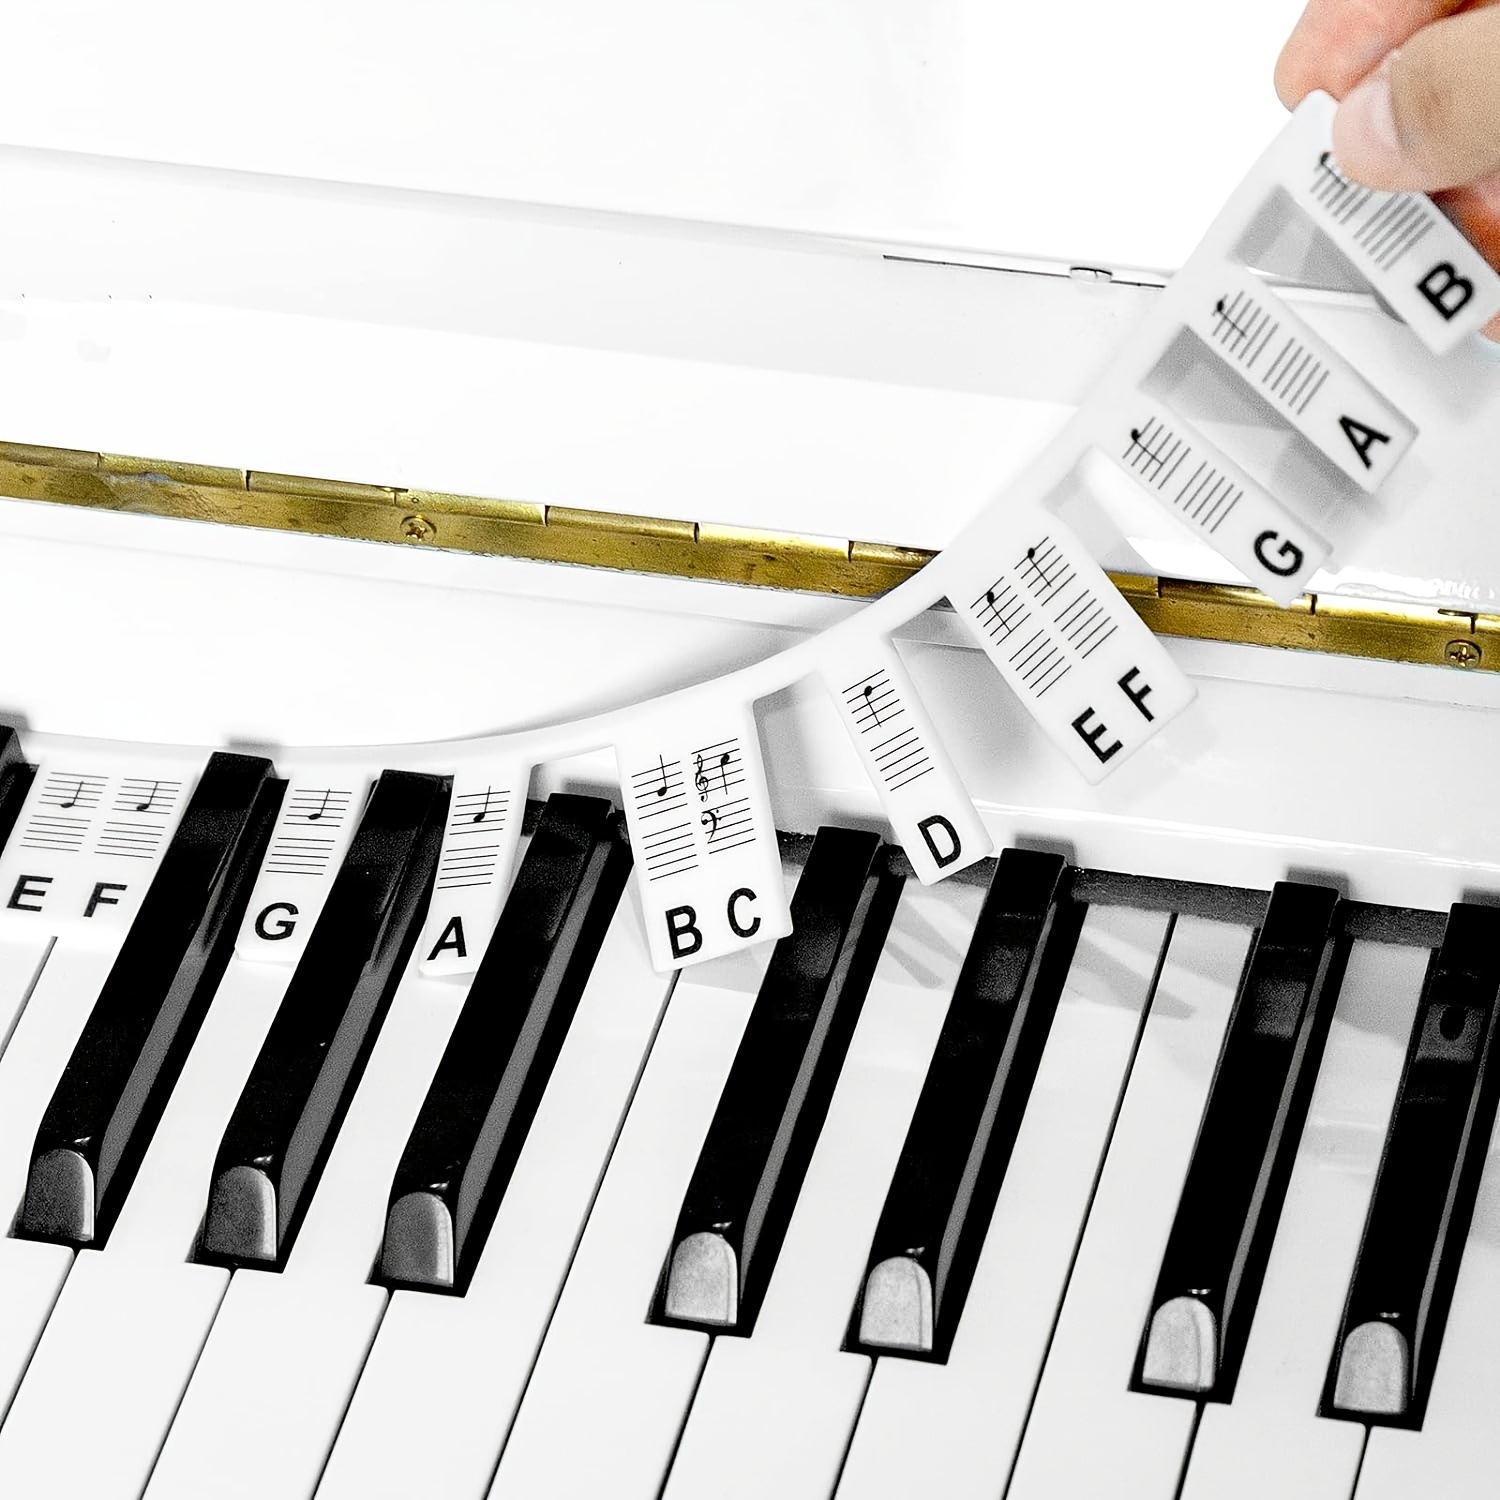 1 Ensemble De 88/61 Autocollants De Touche De Piano, Étiquette De Clavier  De Piano En Silicone Réutilisable Non Adhésive Pour L'apprentissage Du Piano,  Multicolore, Mode en ligne